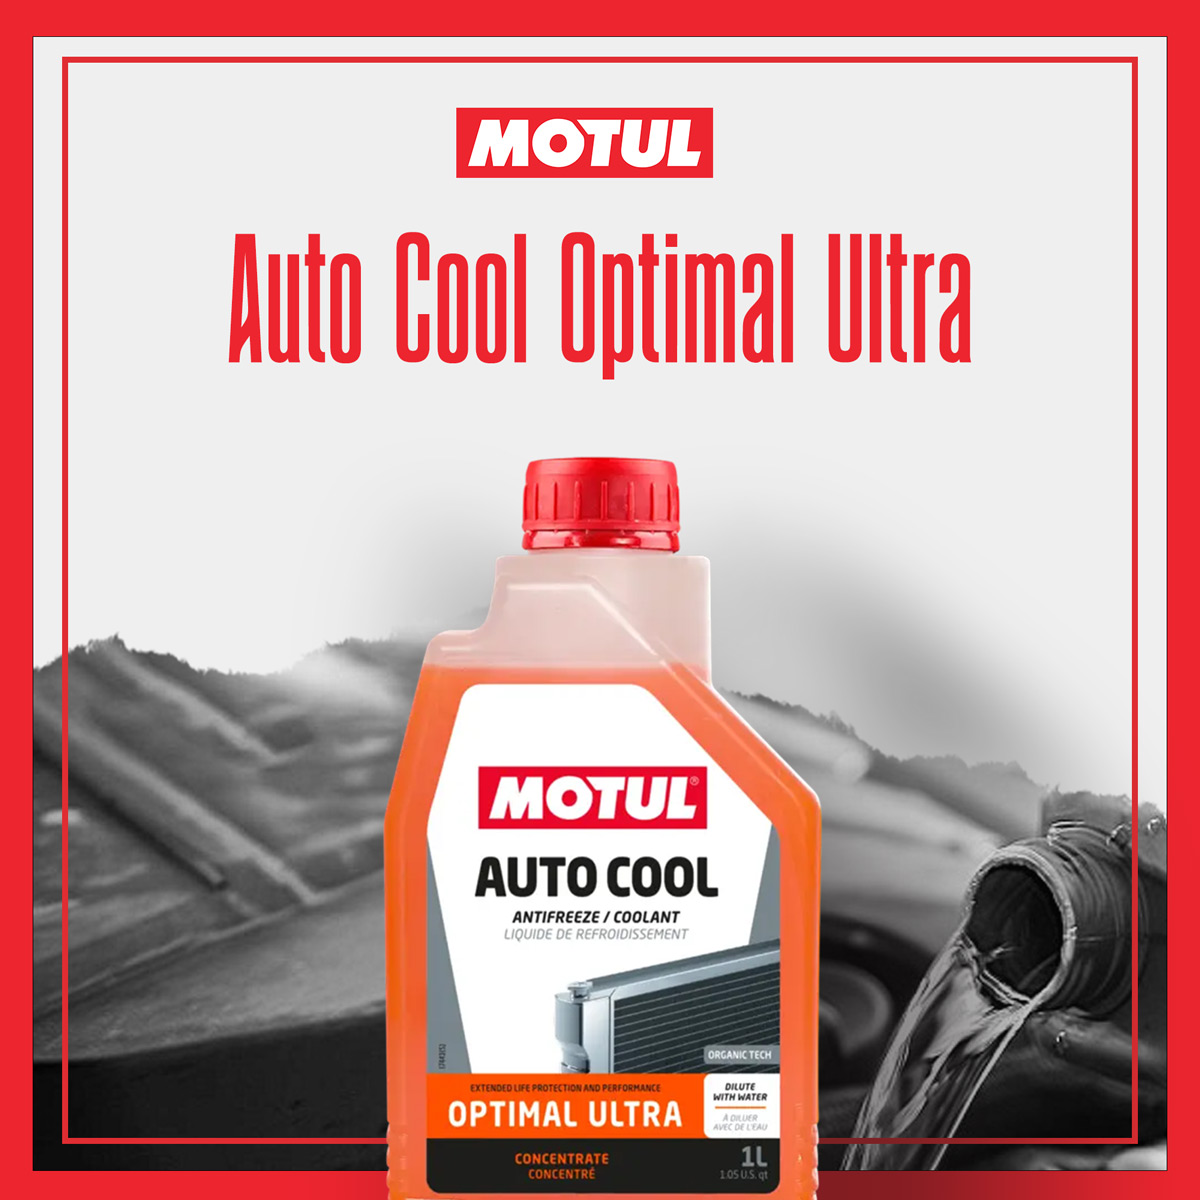 Antigel / liquide de refroidissement pour voiture Motul Auto Cool